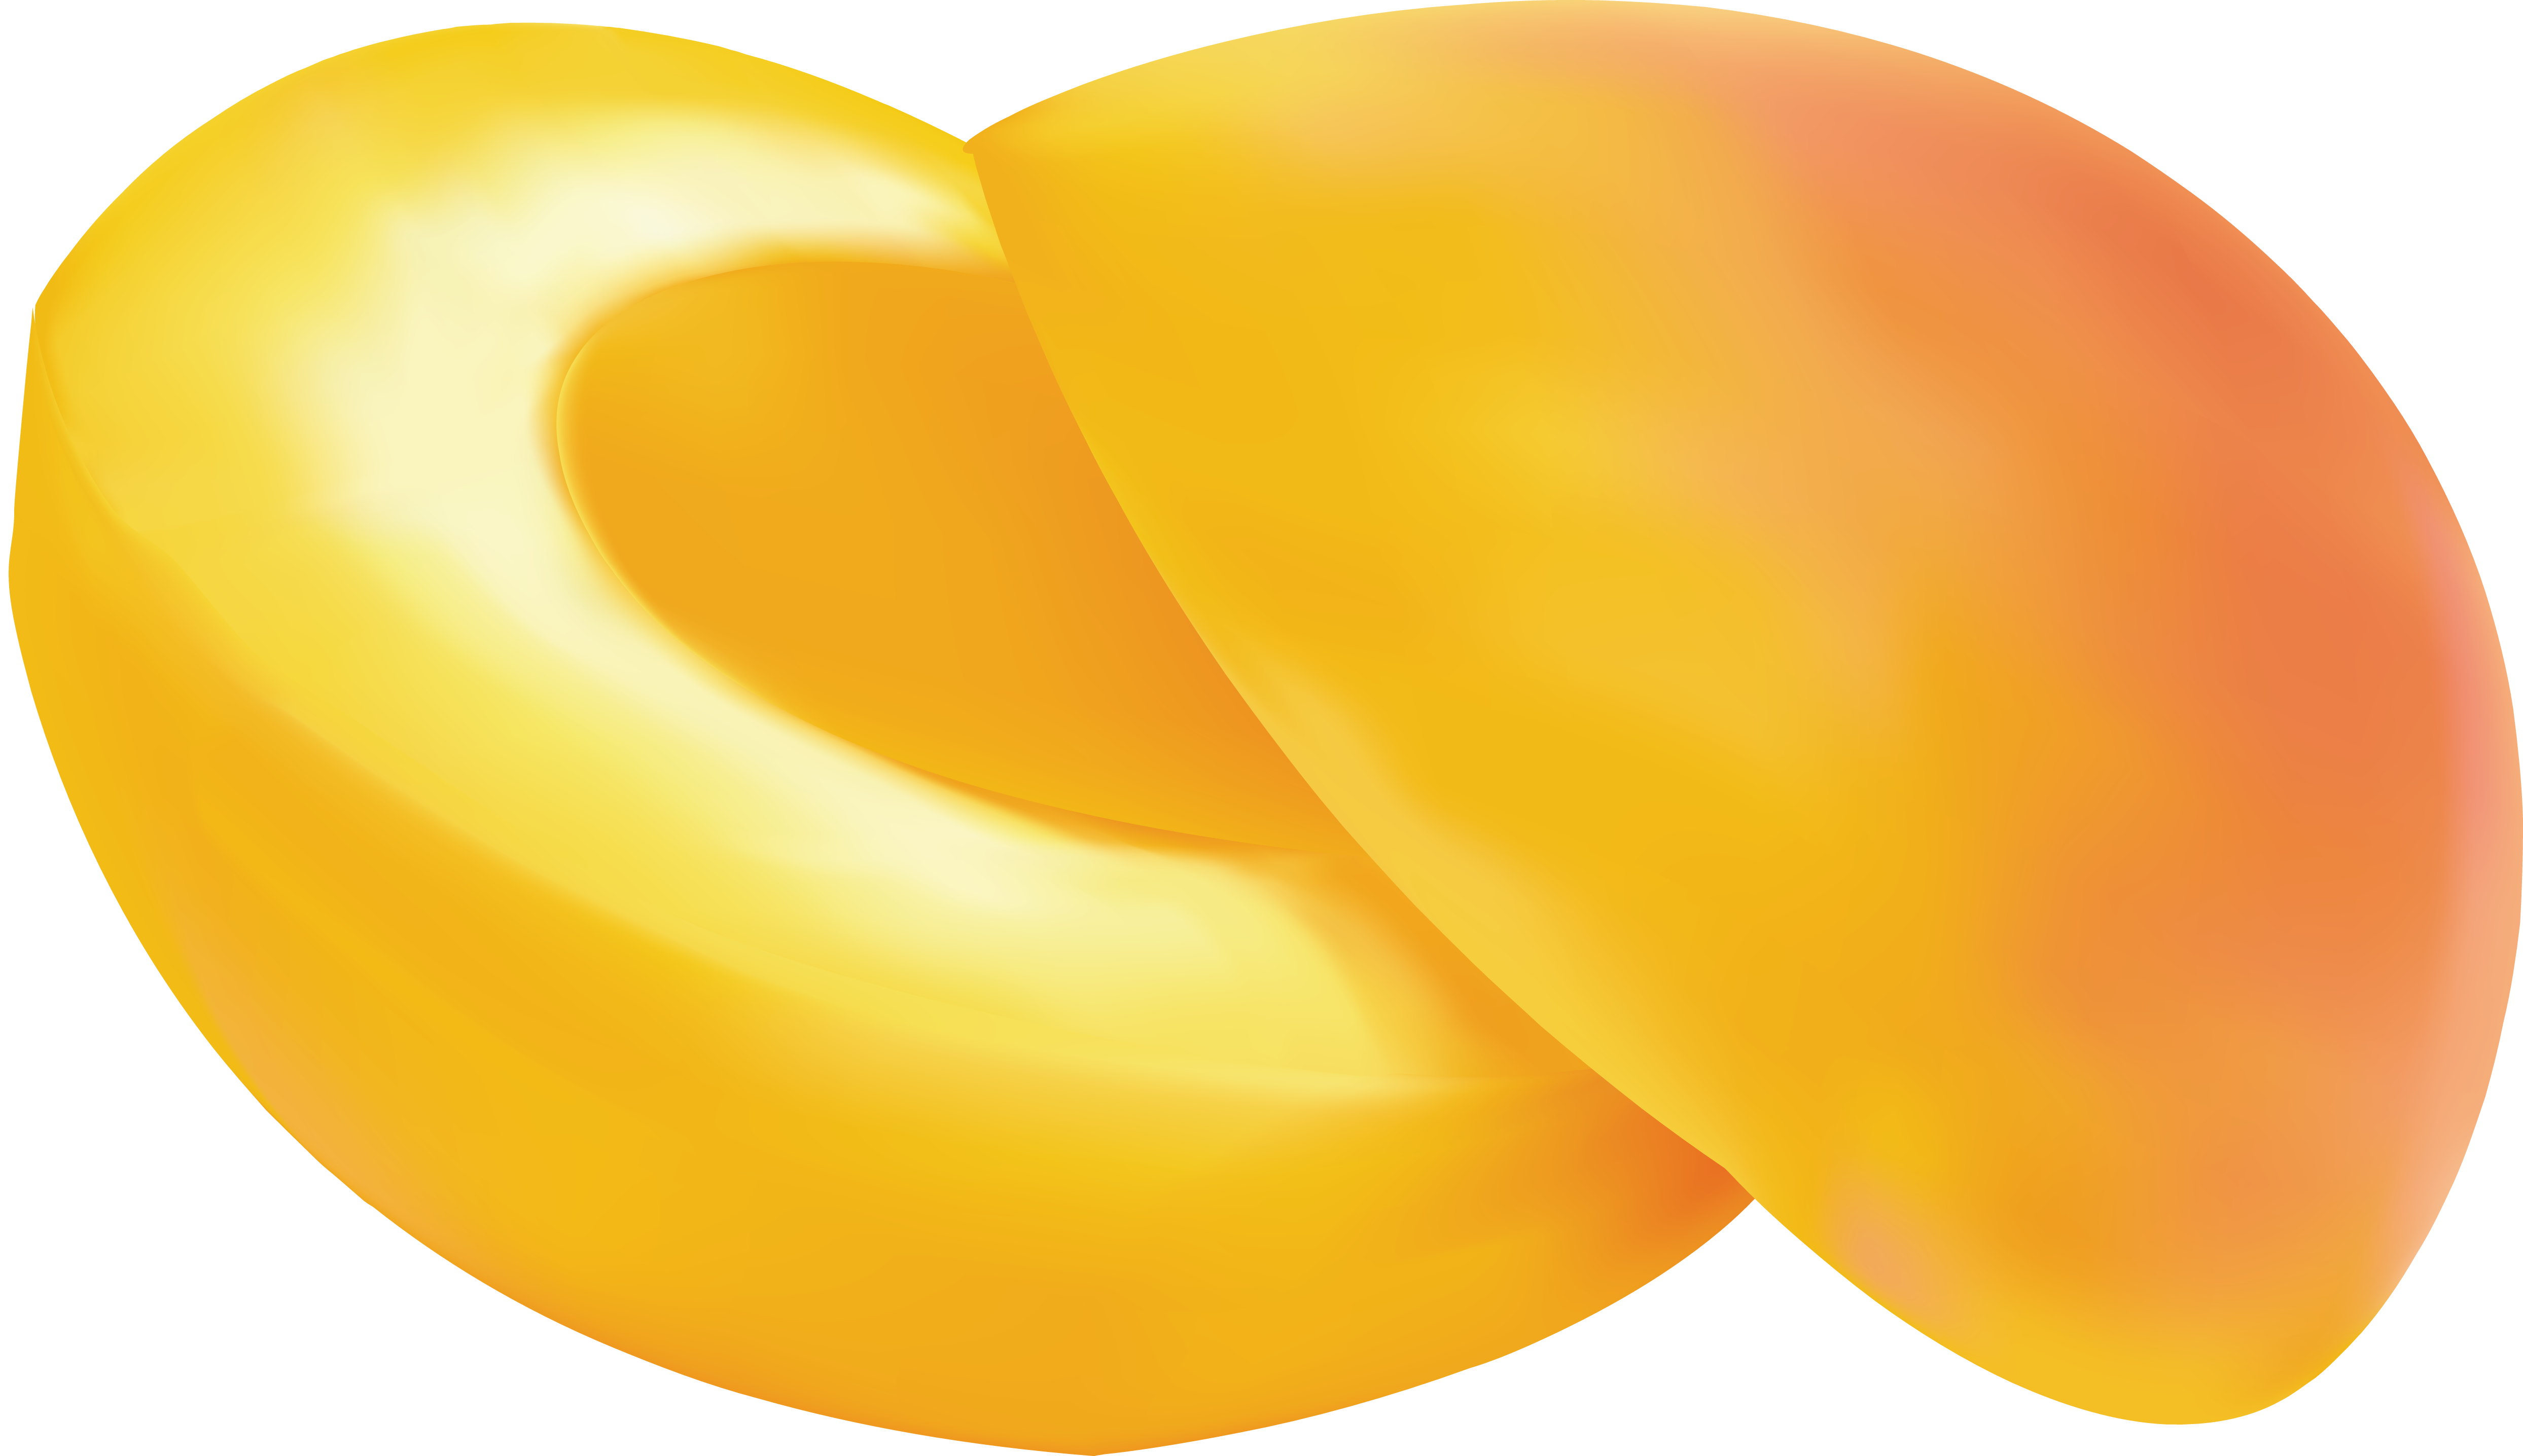 Abricot coupé